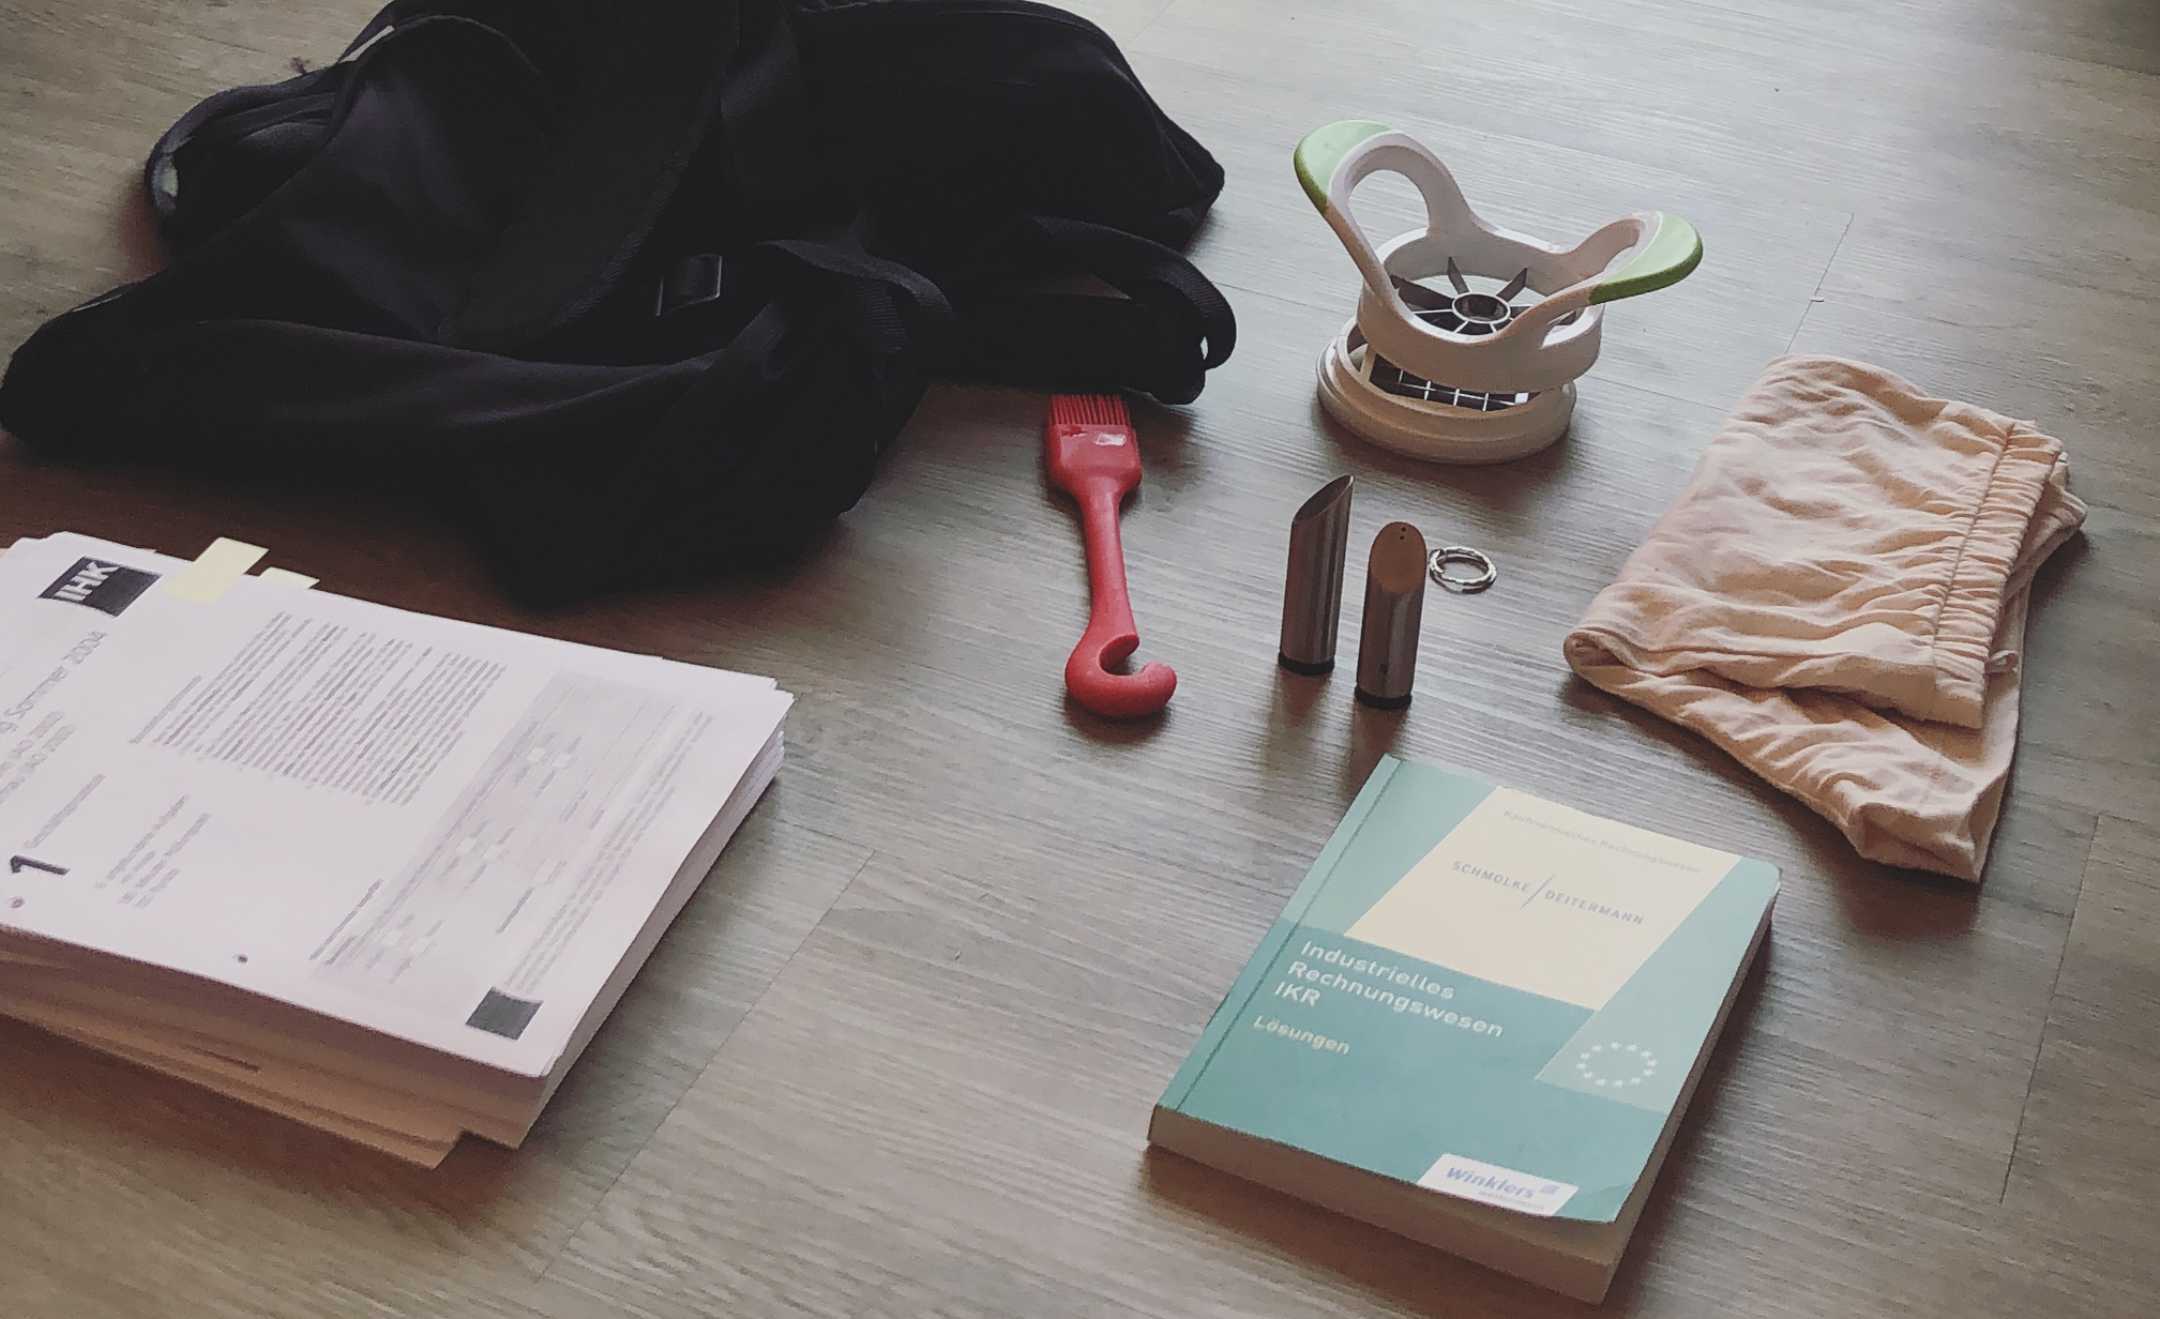 Tasche, Papiere, ein Buch und andere Kleinigkeiten die im Rahmen der Minimalismus-Challenge ausgemistet worden sind.